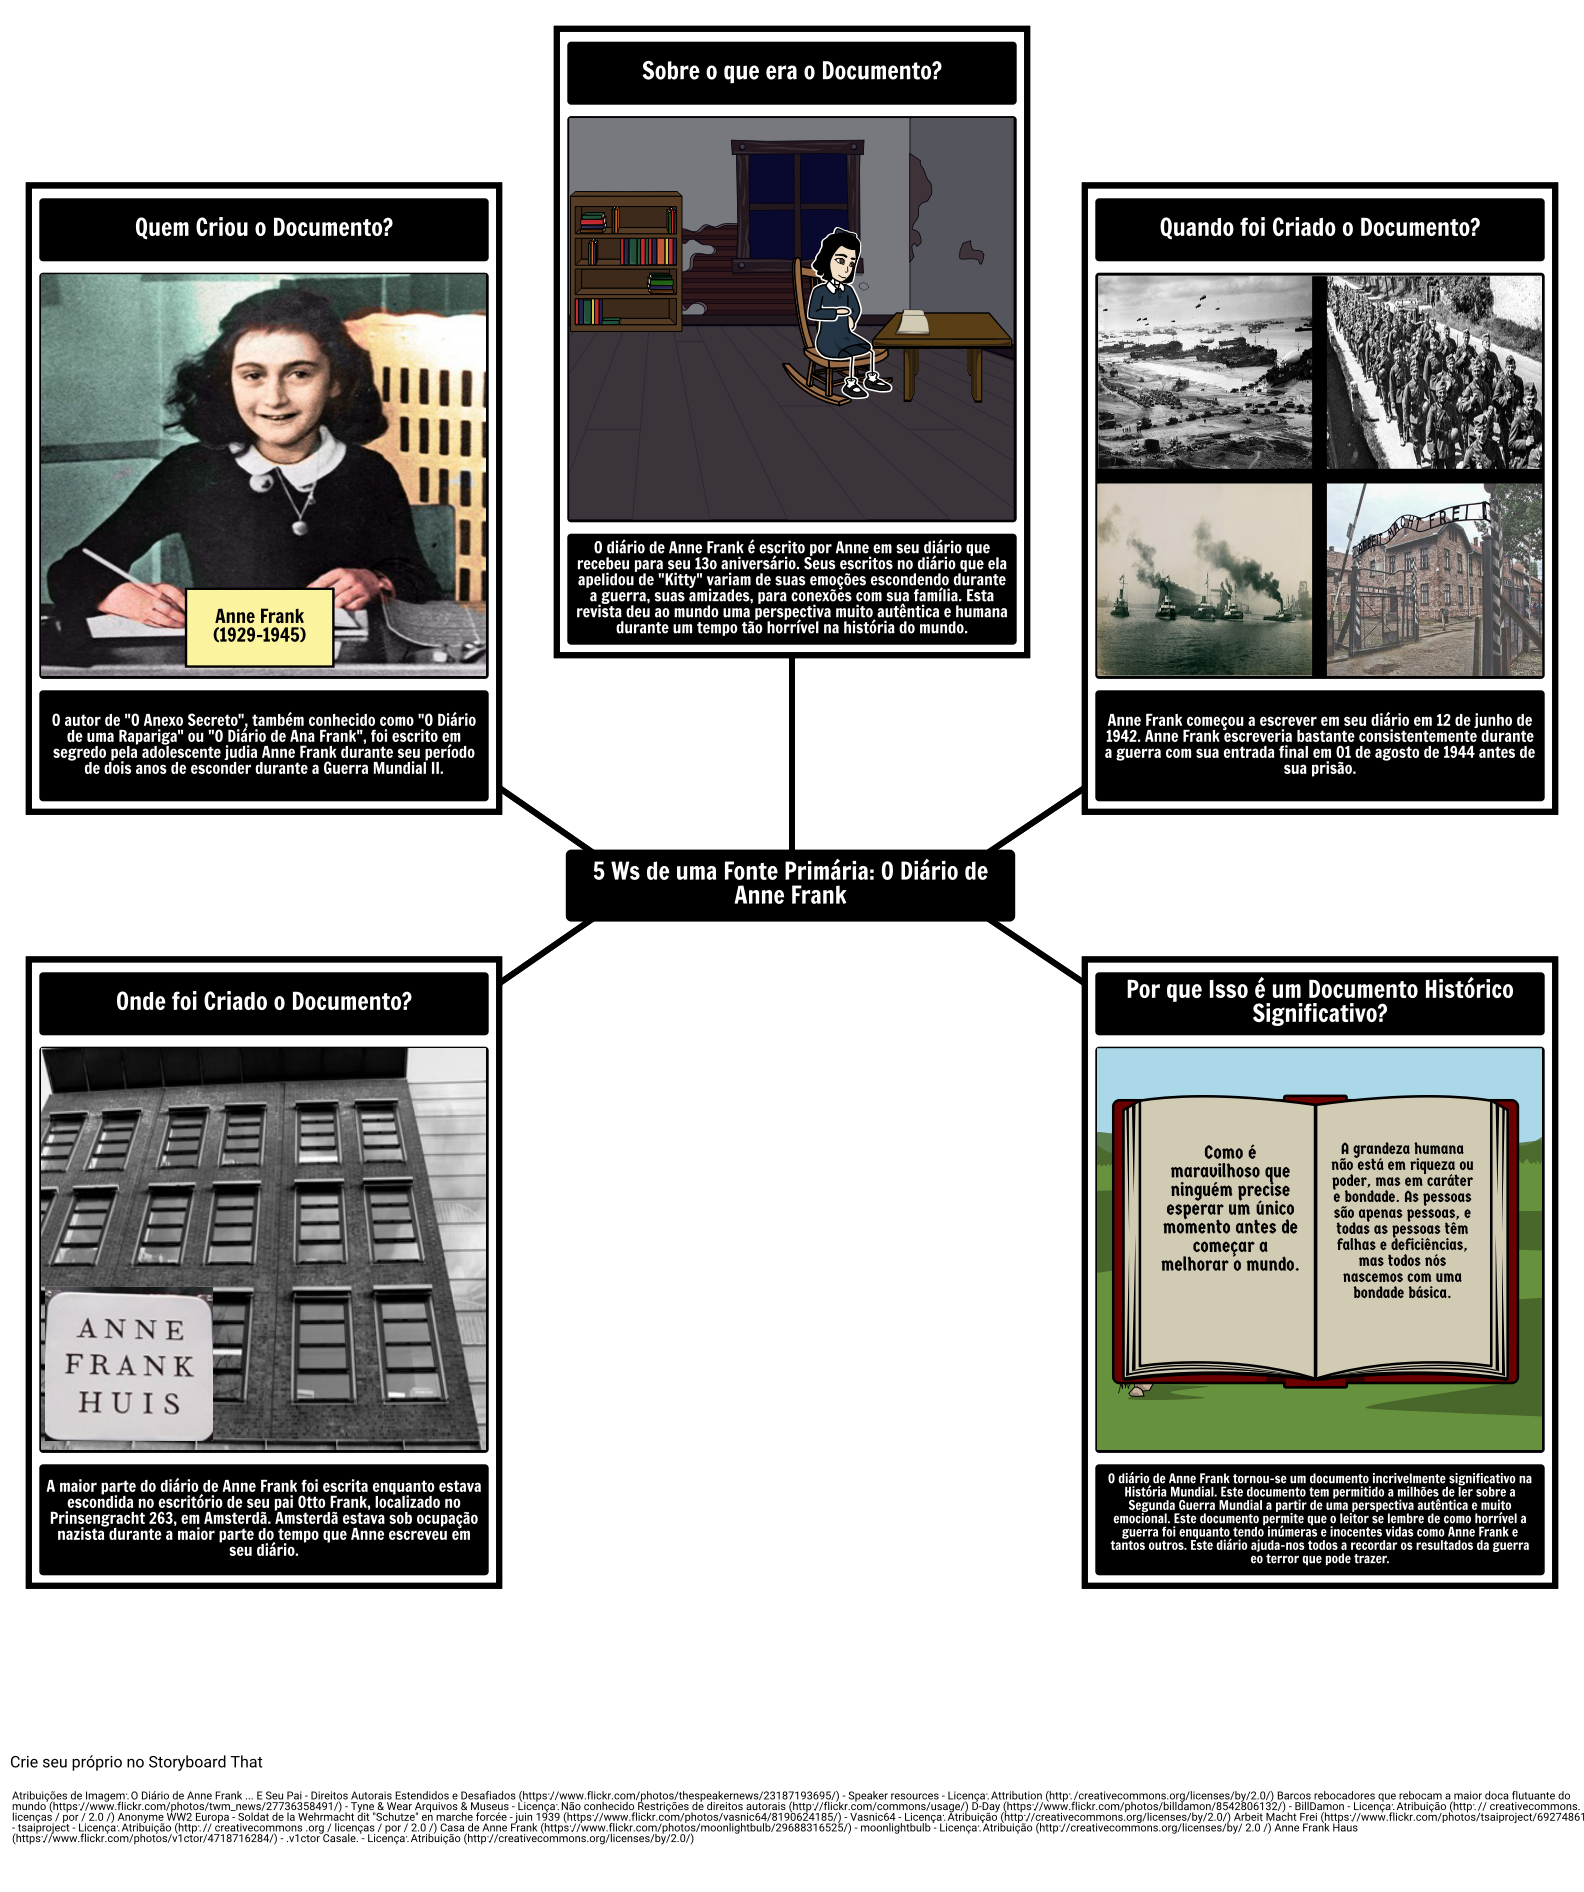 Fonte Primária 5Ws: O Diário de Anne Frank